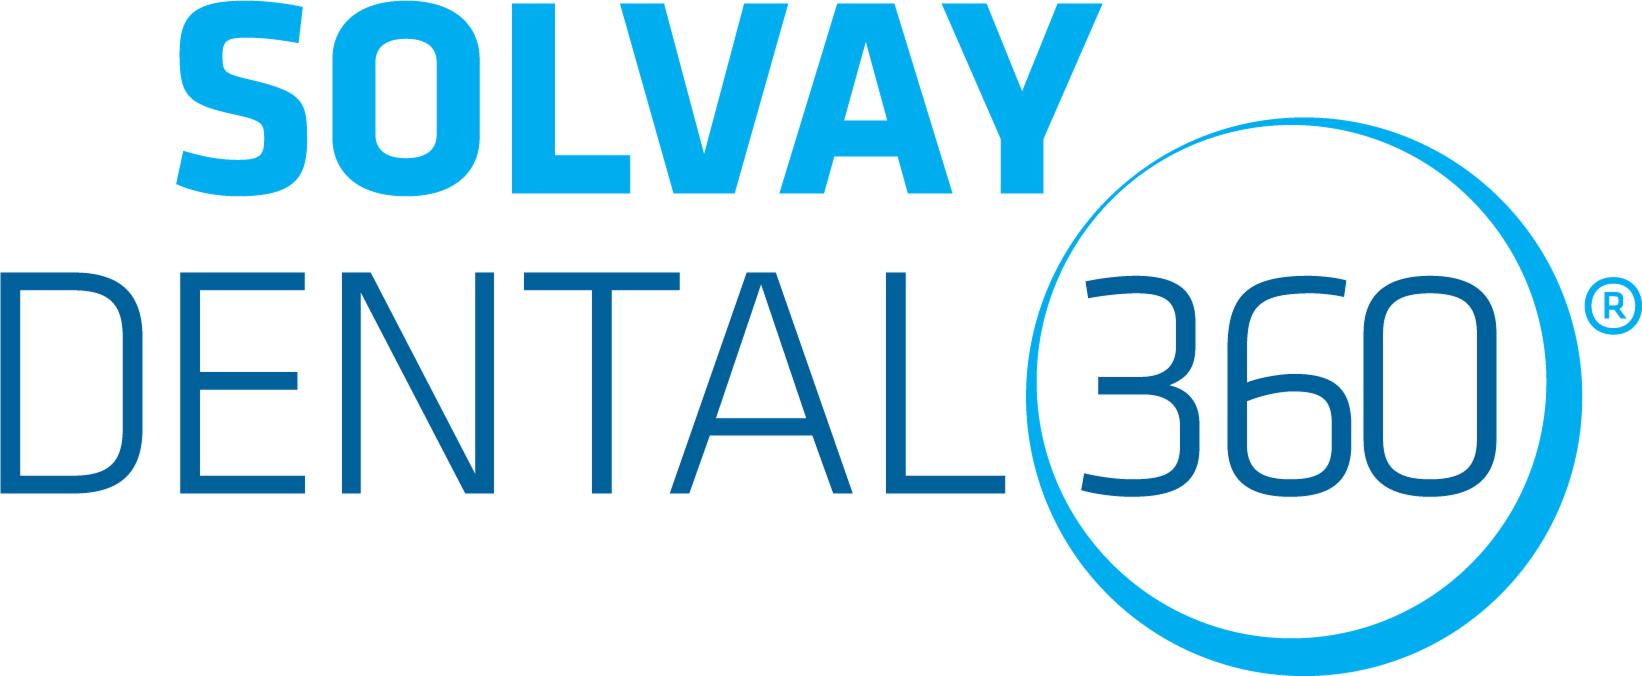 Solvay Dental 360